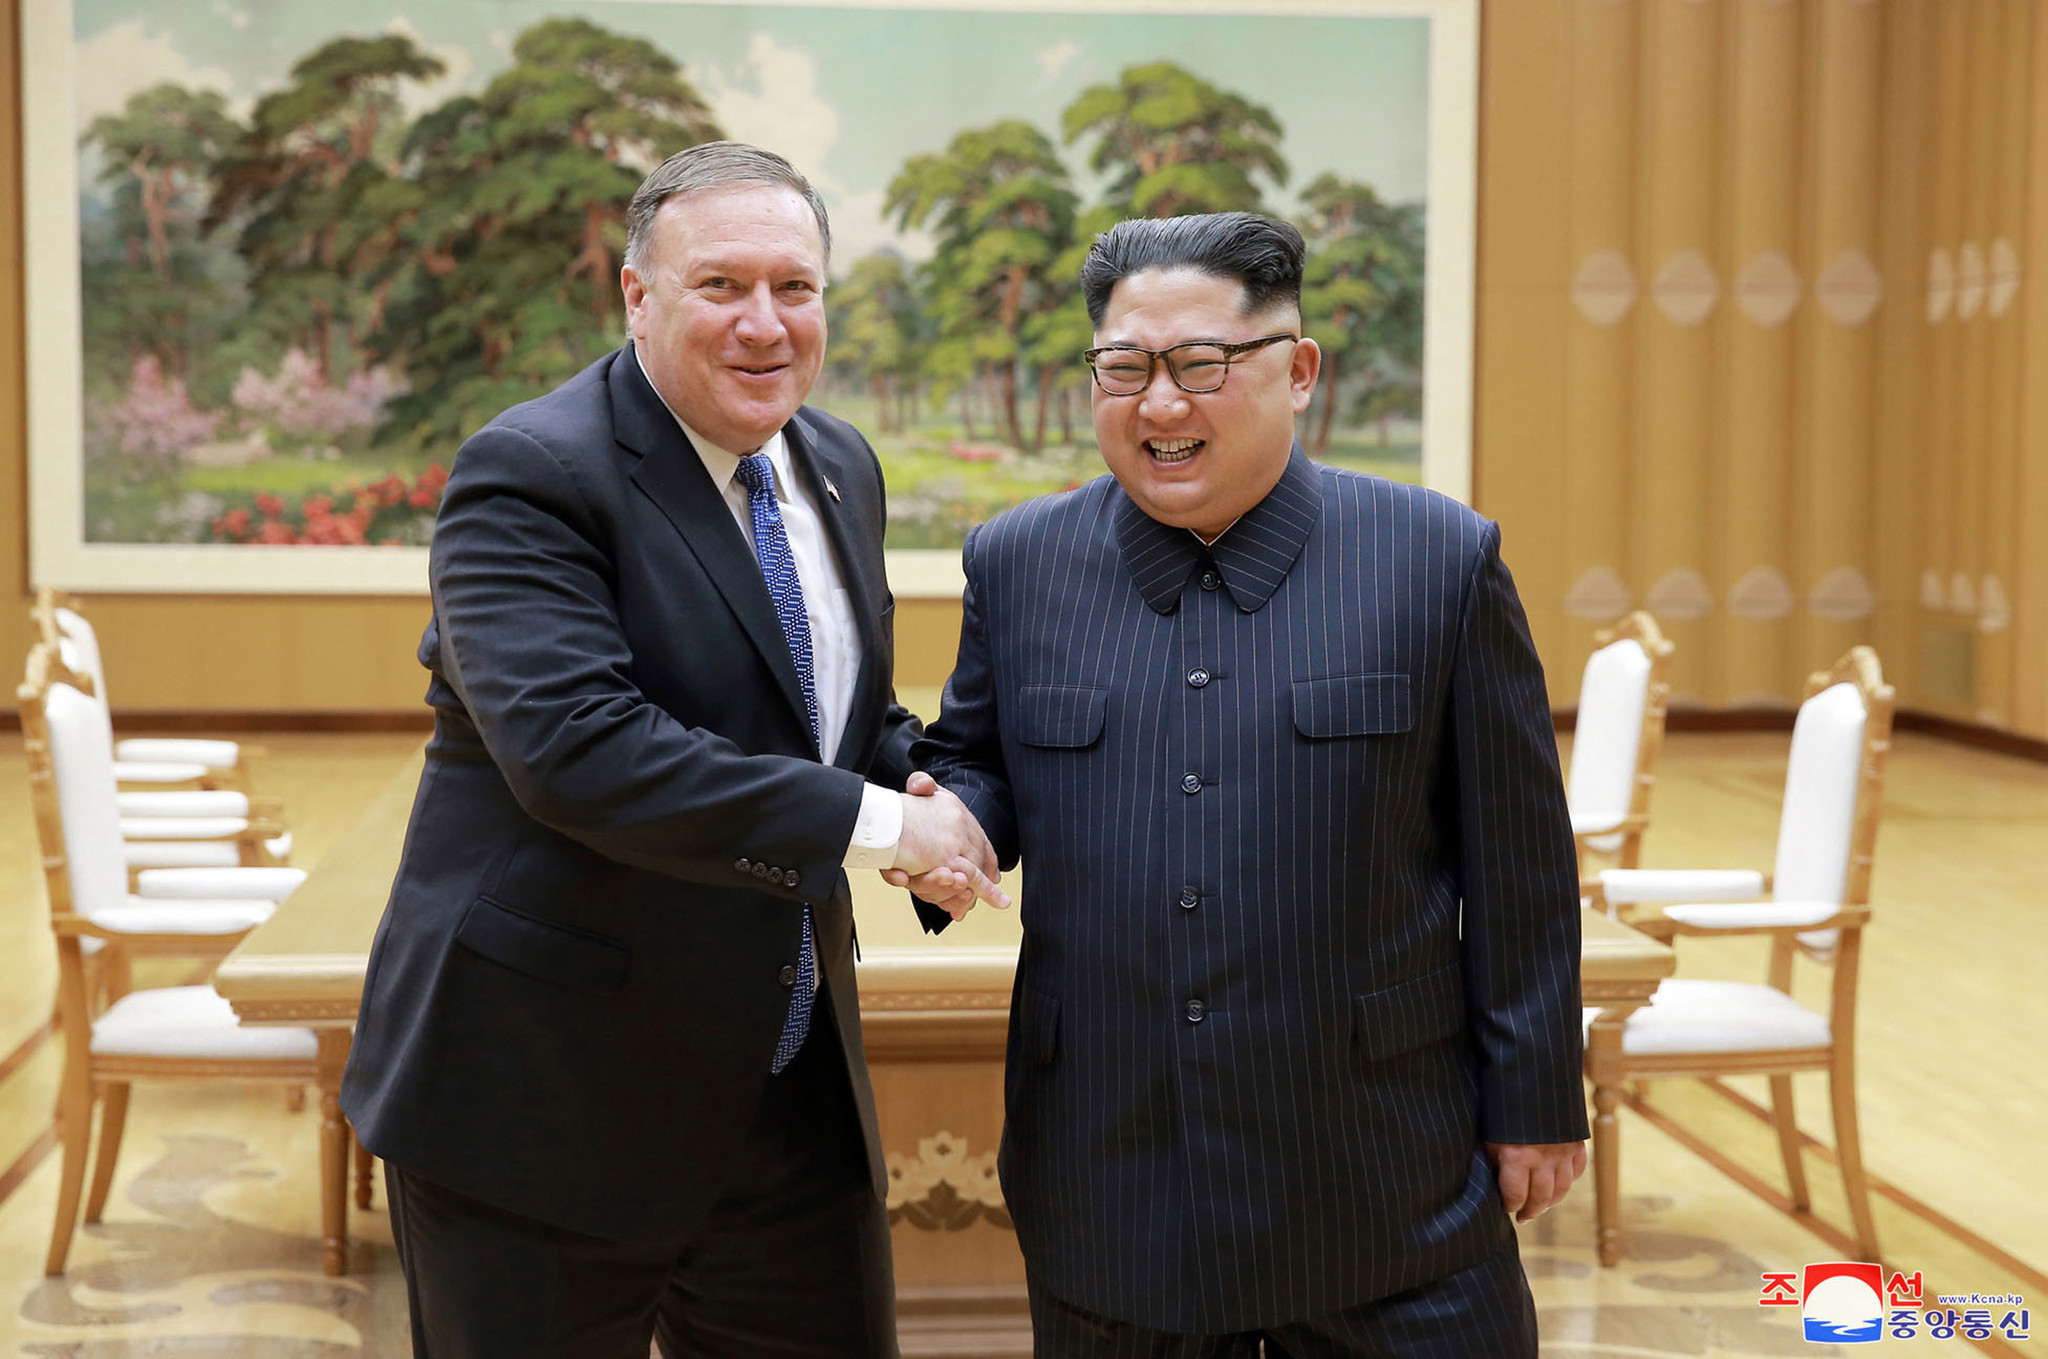 Αμερικάνικες επενδύσεις δισεκατομμυρίων στη Βόρεια Κορέα υπόσχεται ο Πομπέο